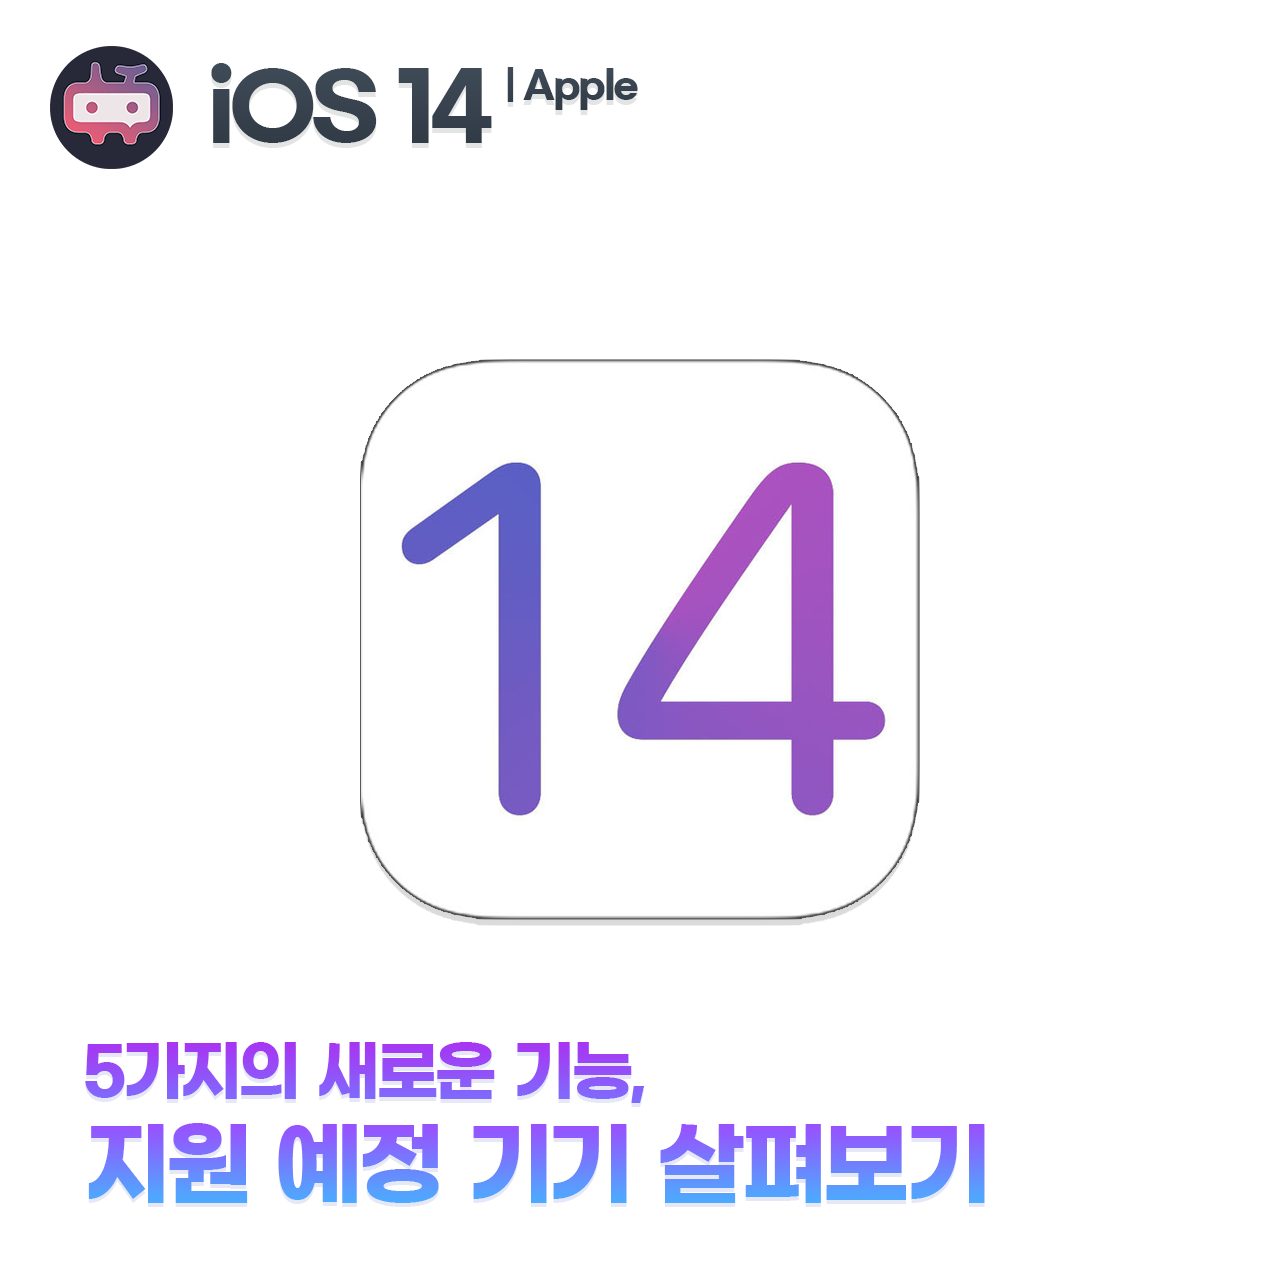 애플 iOS 14, 5가지 새로운 기능 및 지원 예정 기기 목록 살펴보기